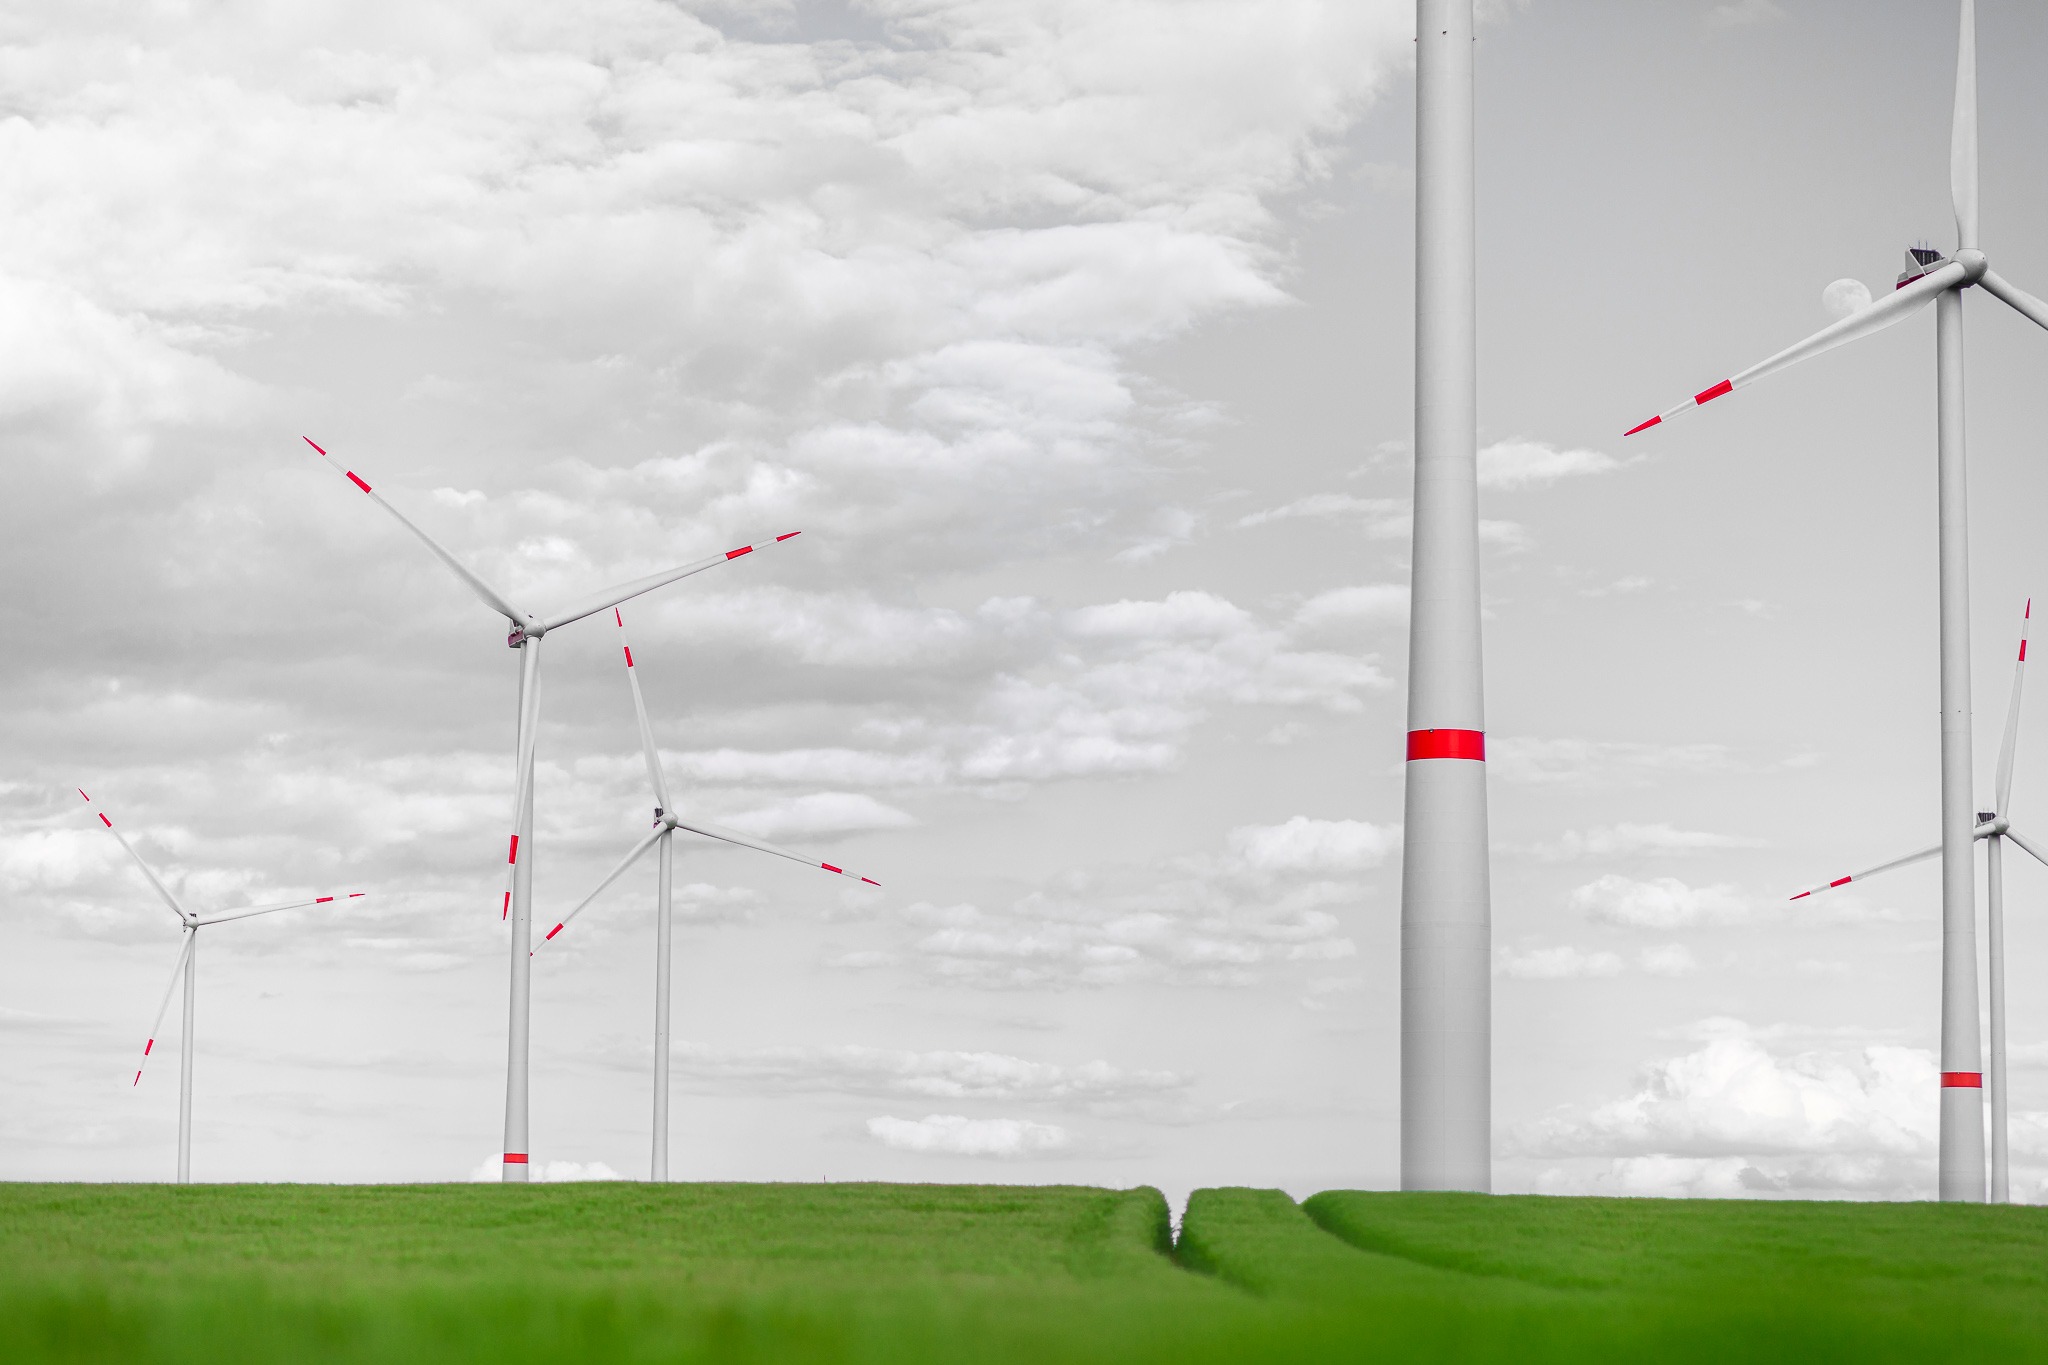 Das Bild zeigt einen Winrdpark mit mehrere Windkraftanlagen. im Vordergrund ist ein grünes Weizenfeld zu sehen.